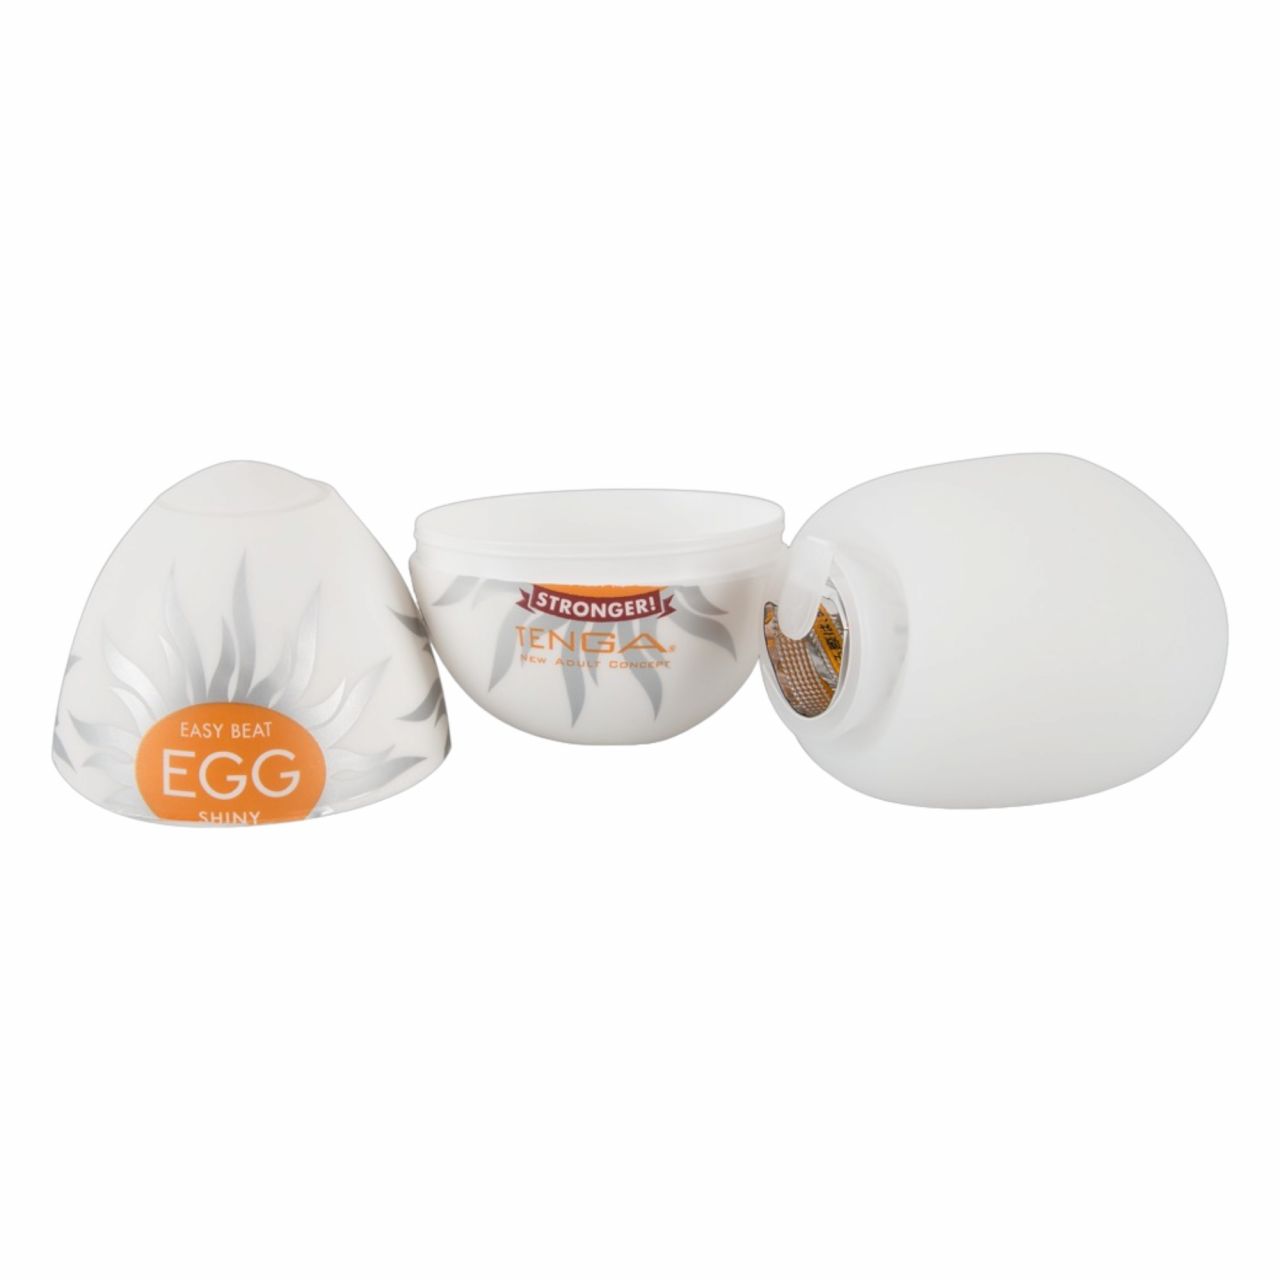 TENGA Egg Shiny - maszturbációs tojás (1db)